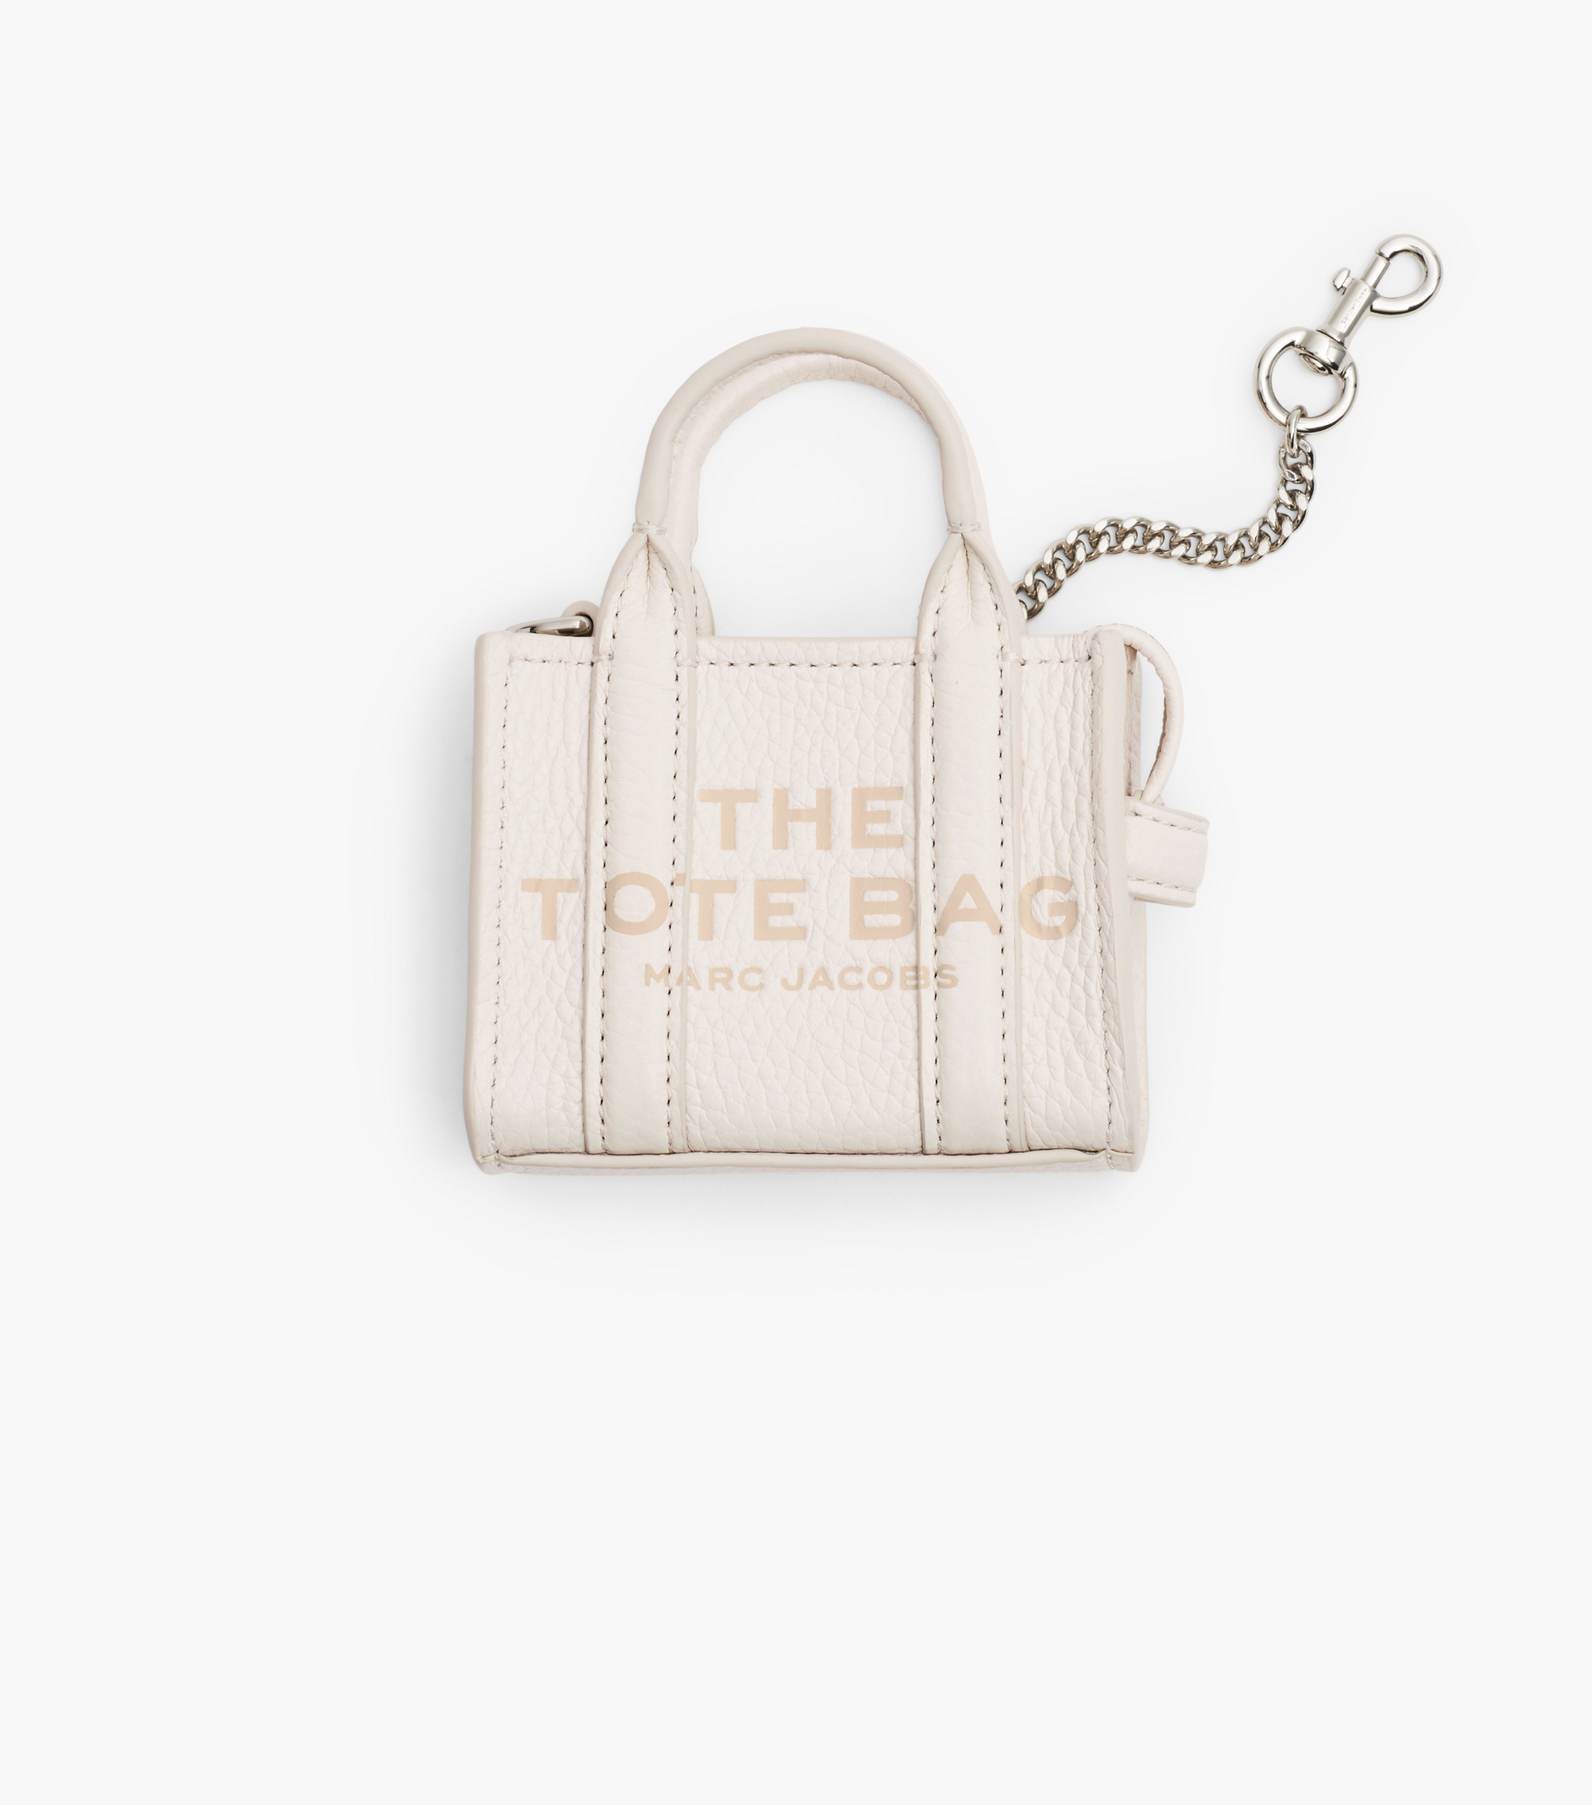 ビジネスバッグ【お値下げ中】マークジェイコブス The tote bag small レザー